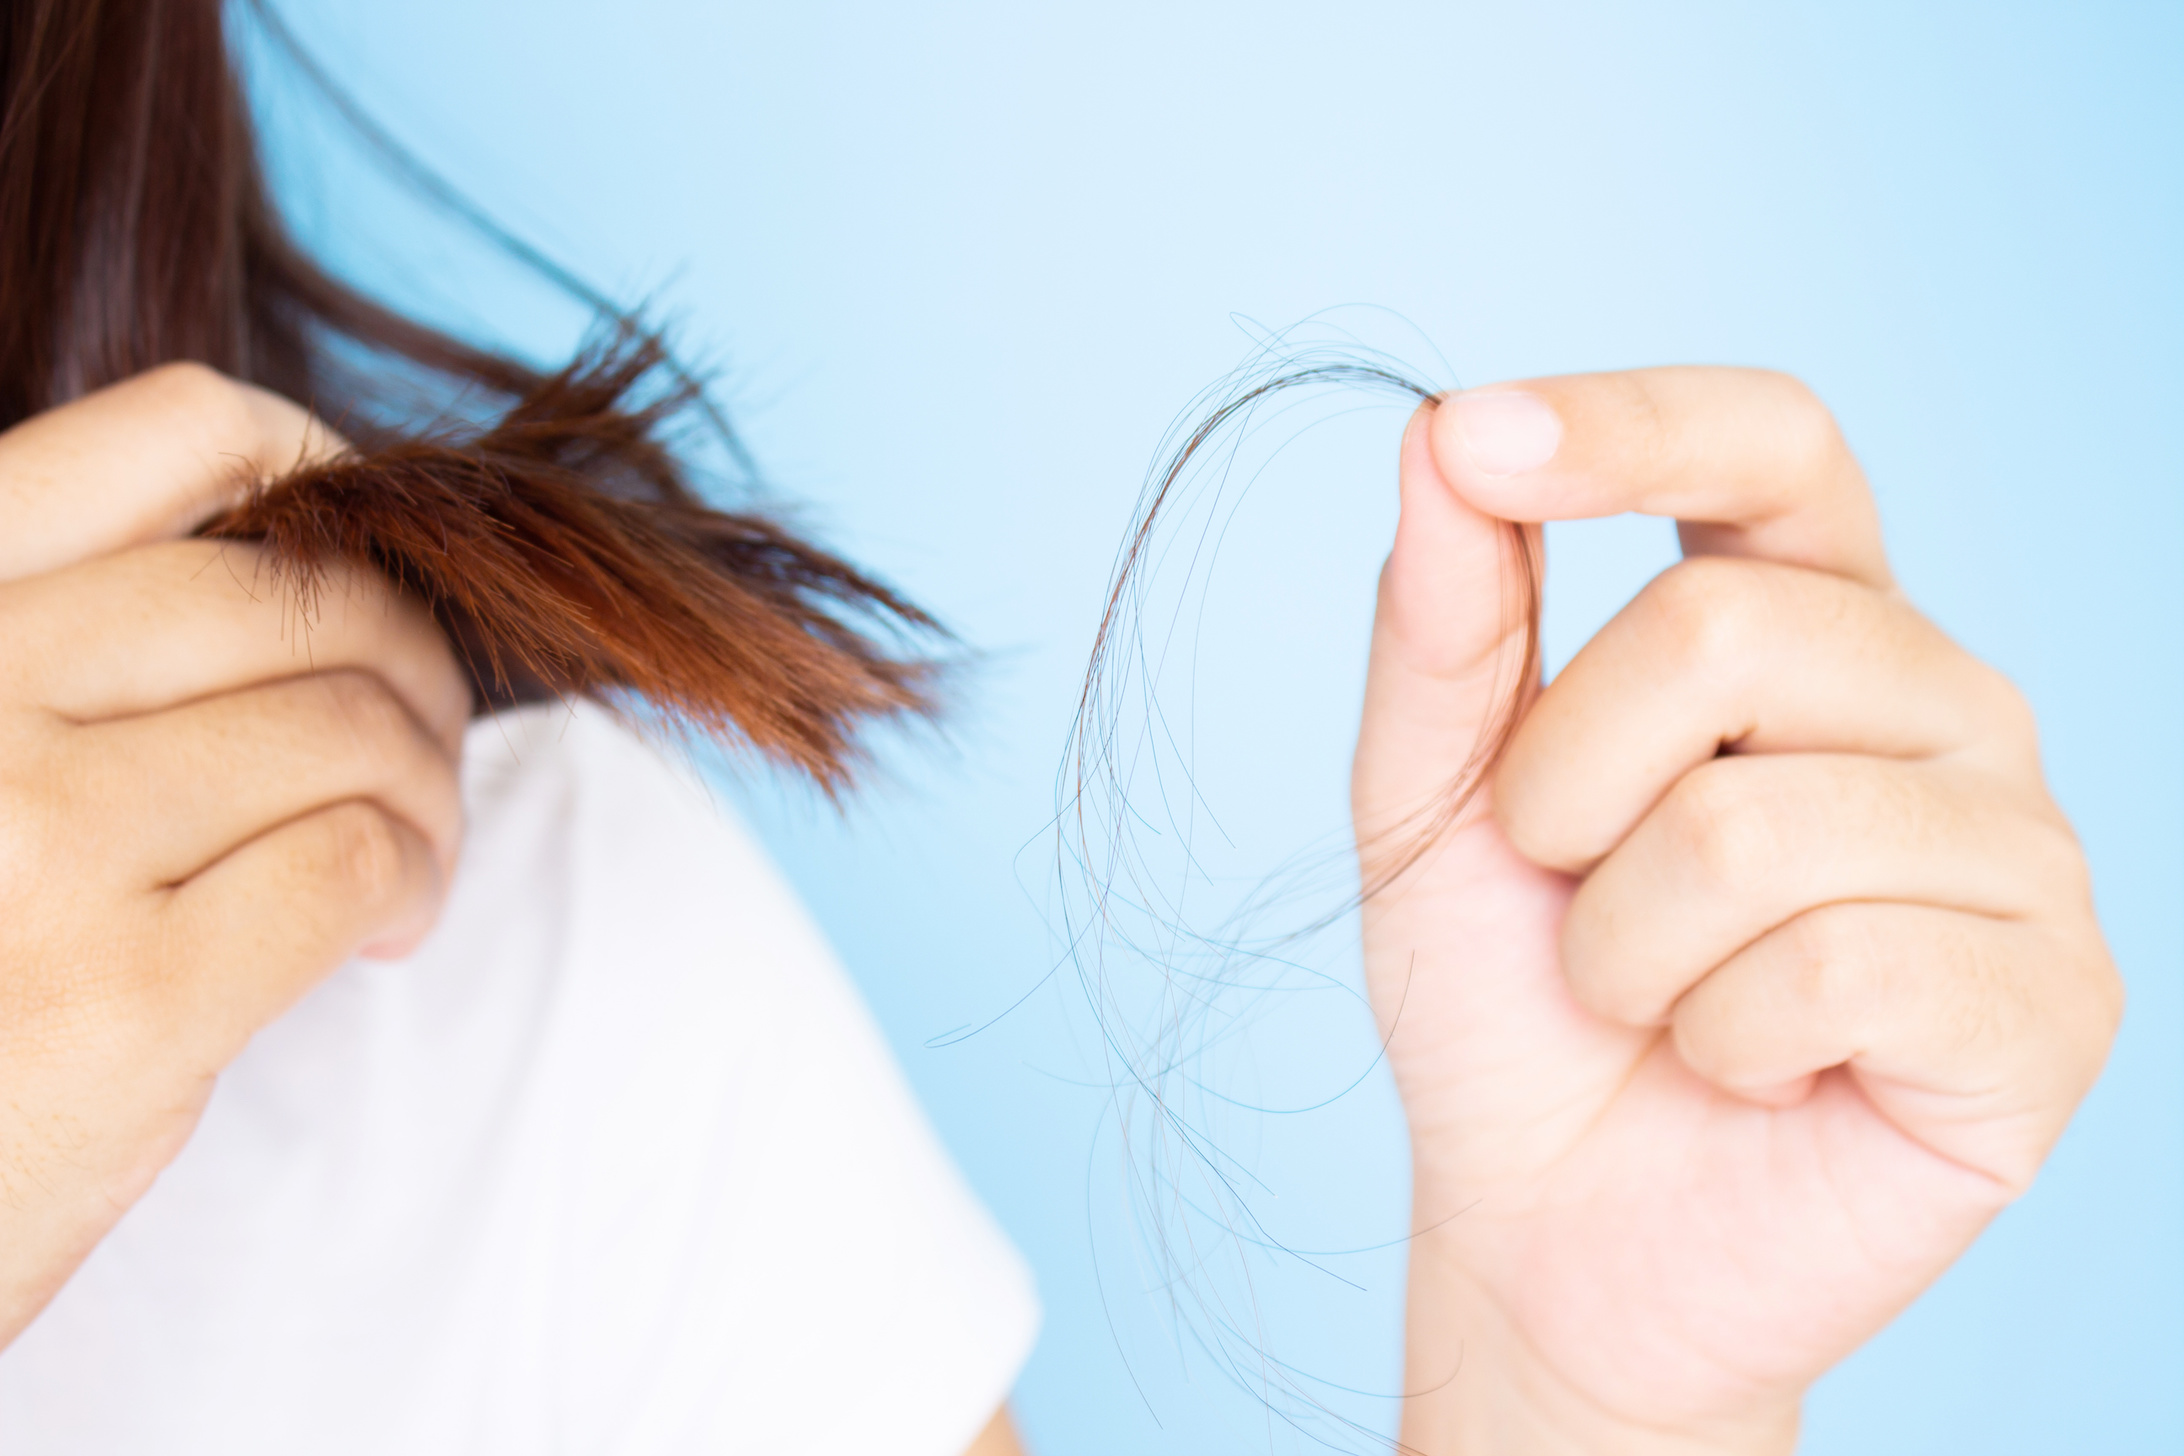 Des solutions existent pour freiner la chute des cheveux. © Pangpleiades, Adobe Stock